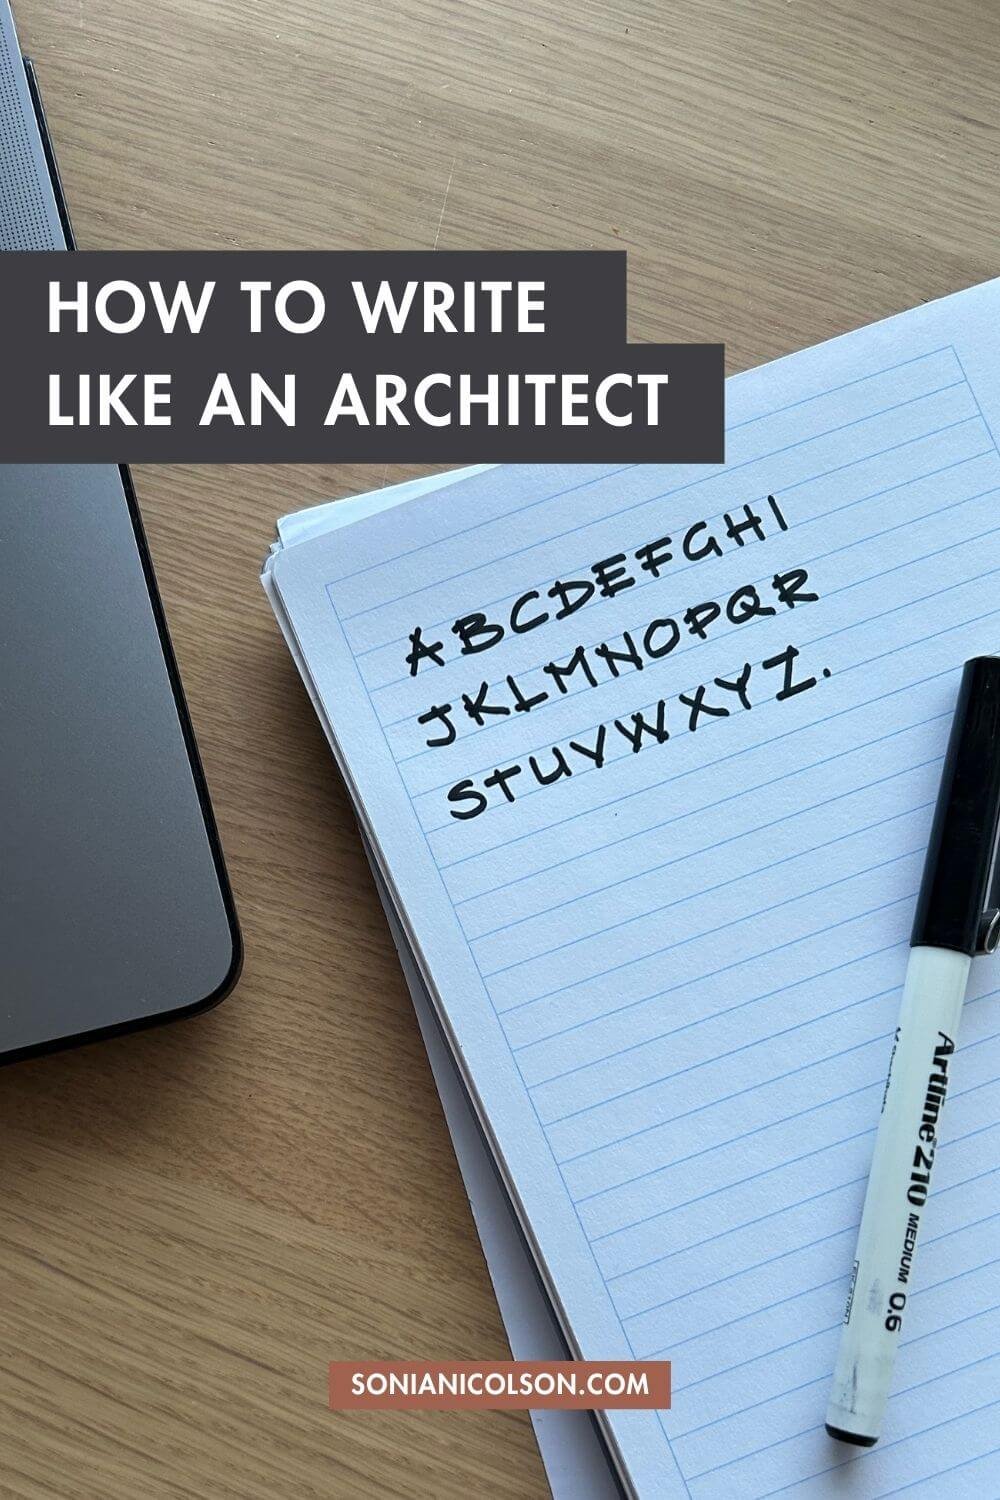 How to write like an Architec.jpg